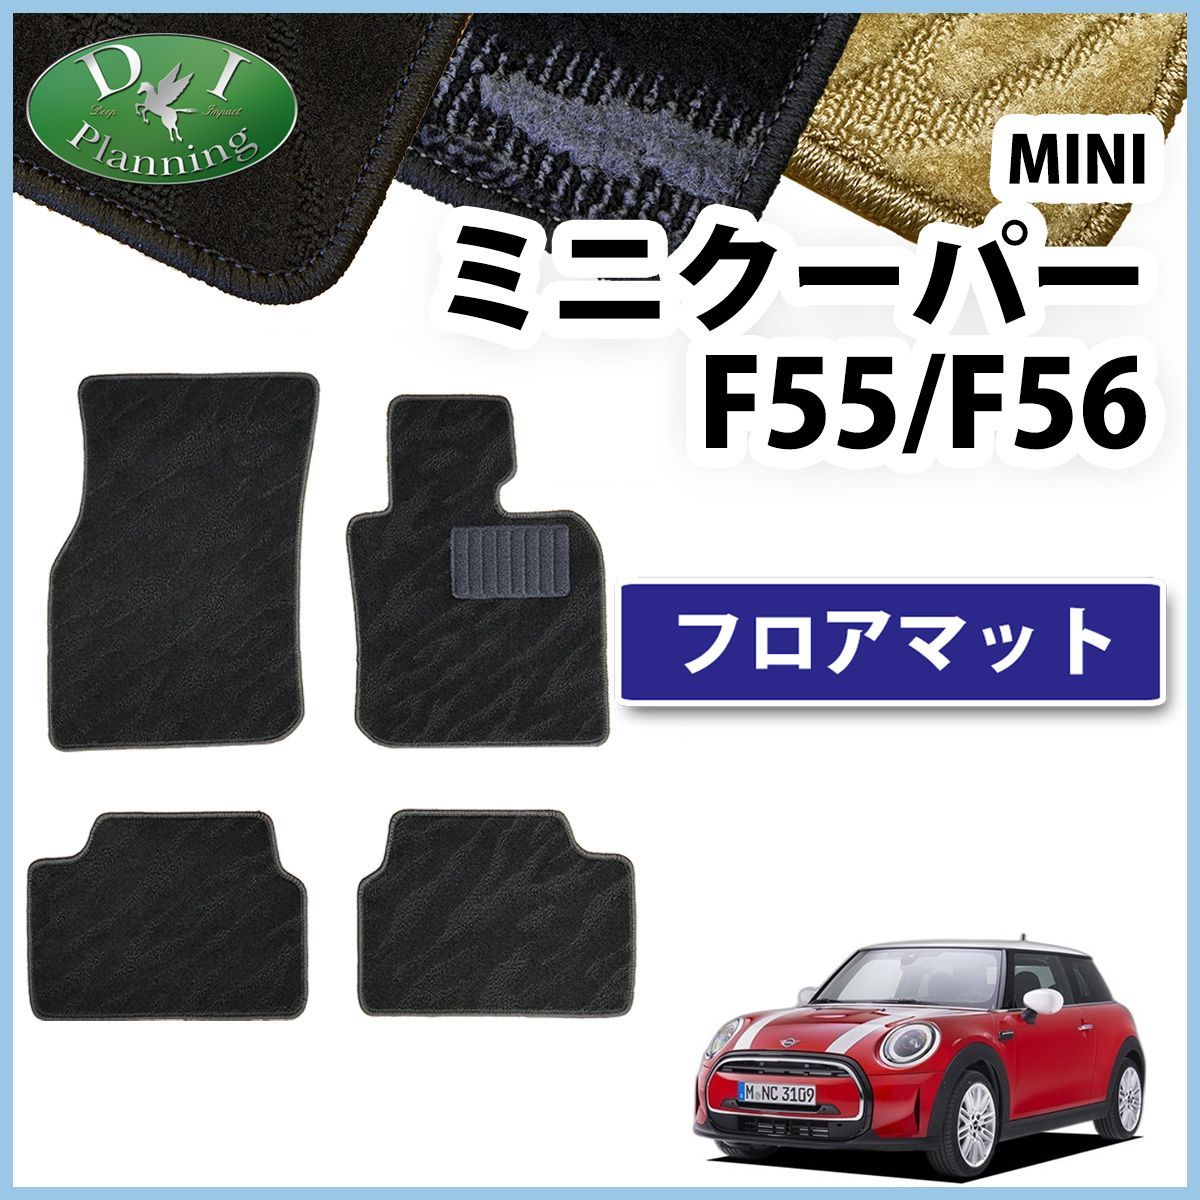 MINI ミニクーパー F55 フロアマット カーマット 織柄シリーズ 社外新品 カー用品のDIプランニング メルカリ